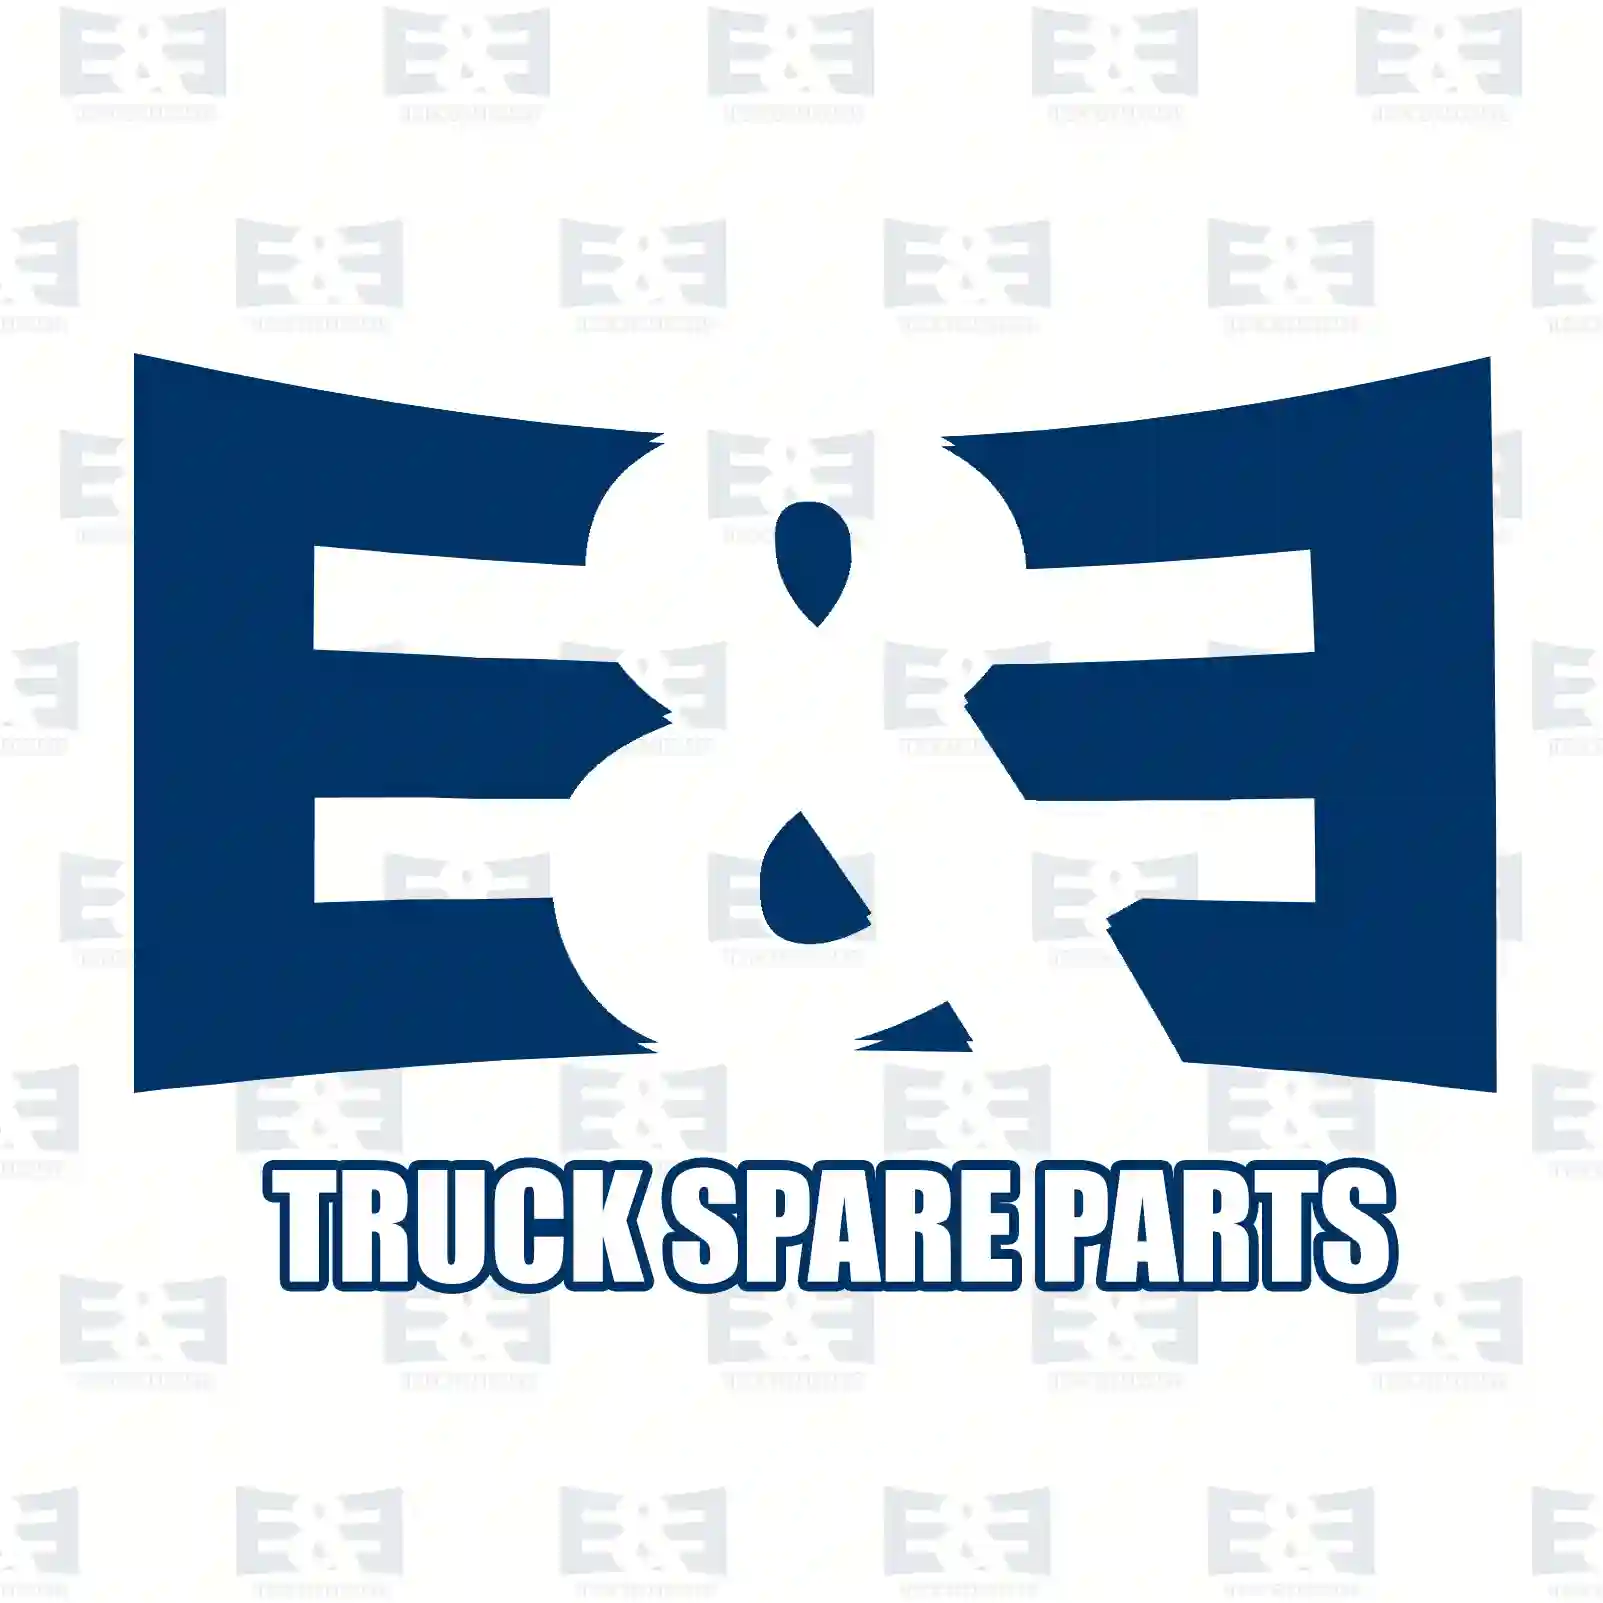 Compressor, 2E2296747, 51541017190, 51541017201, 51541017204, 51541019201 ||  2E2296747 E&E Truck Spare Parts | Truck Spare Parts, Auotomotive Spare Parts Compressor, 2E2296747, 51541017190, 51541017201, 51541017204, 51541019201 ||  2E2296747 E&E Truck Spare Parts | Truck Spare Parts, Auotomotive Spare Parts